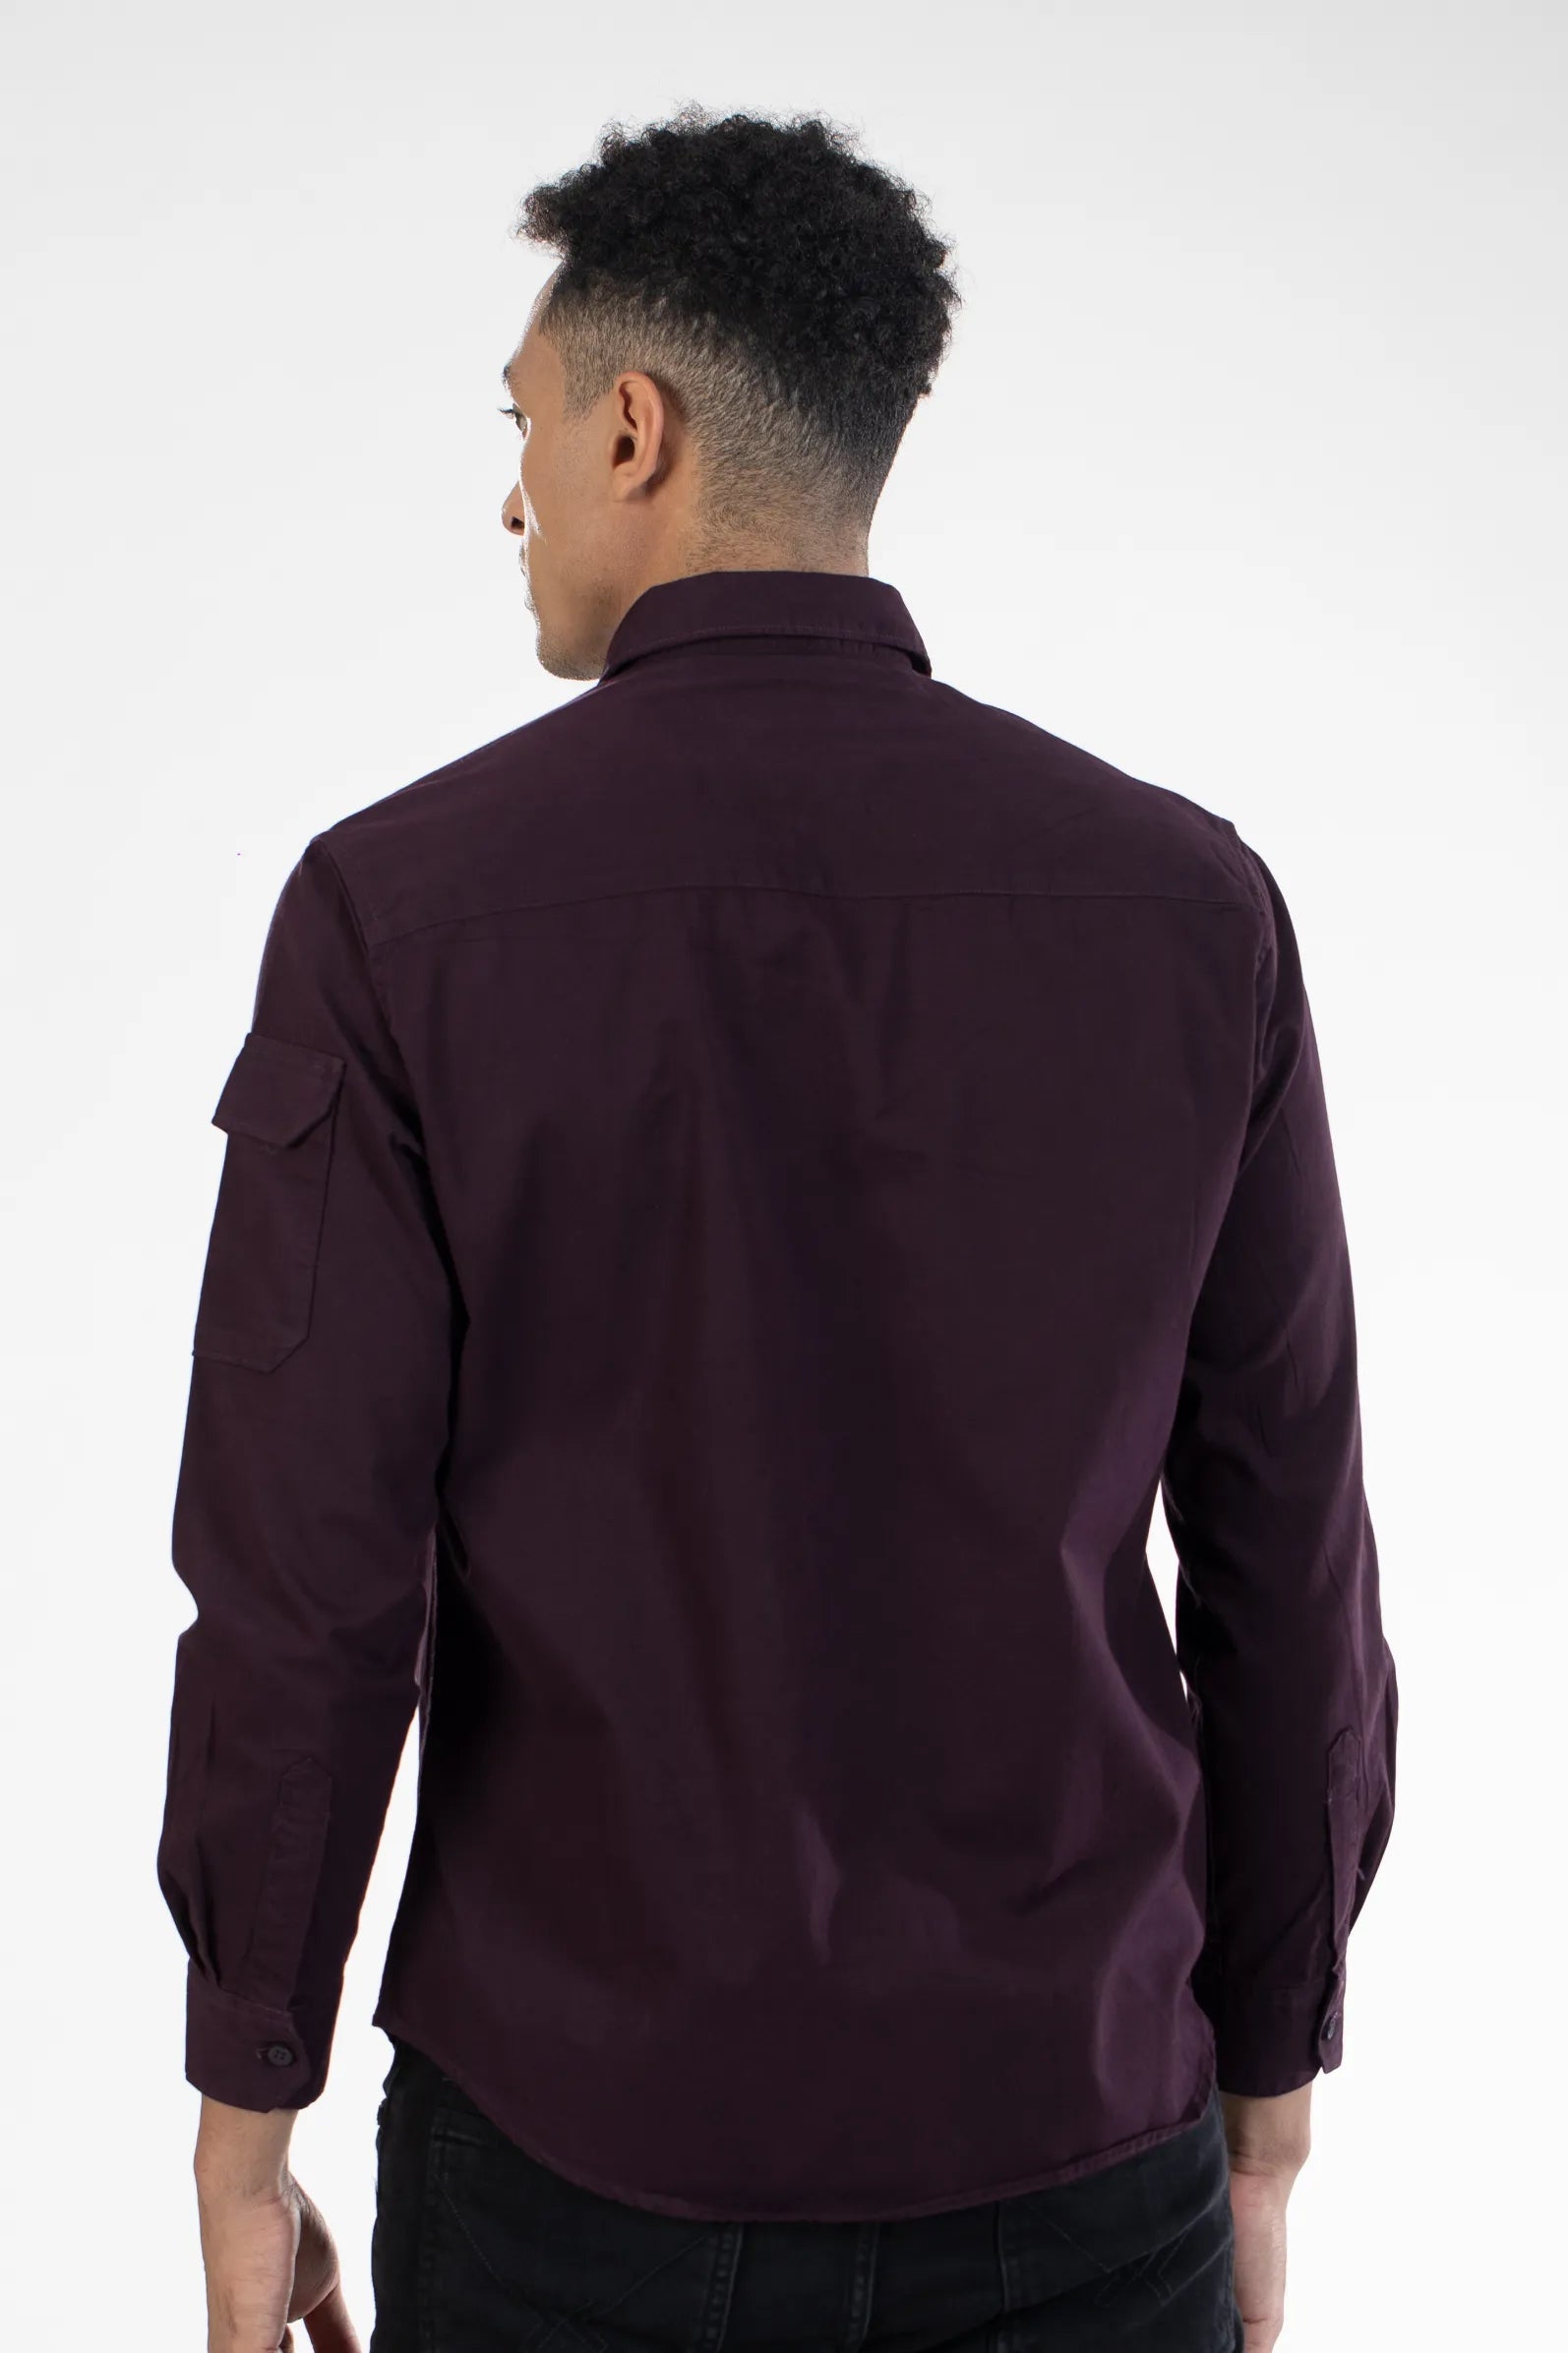 Buy Cargo Pocket Full Sleeve Plain Shirt Online.